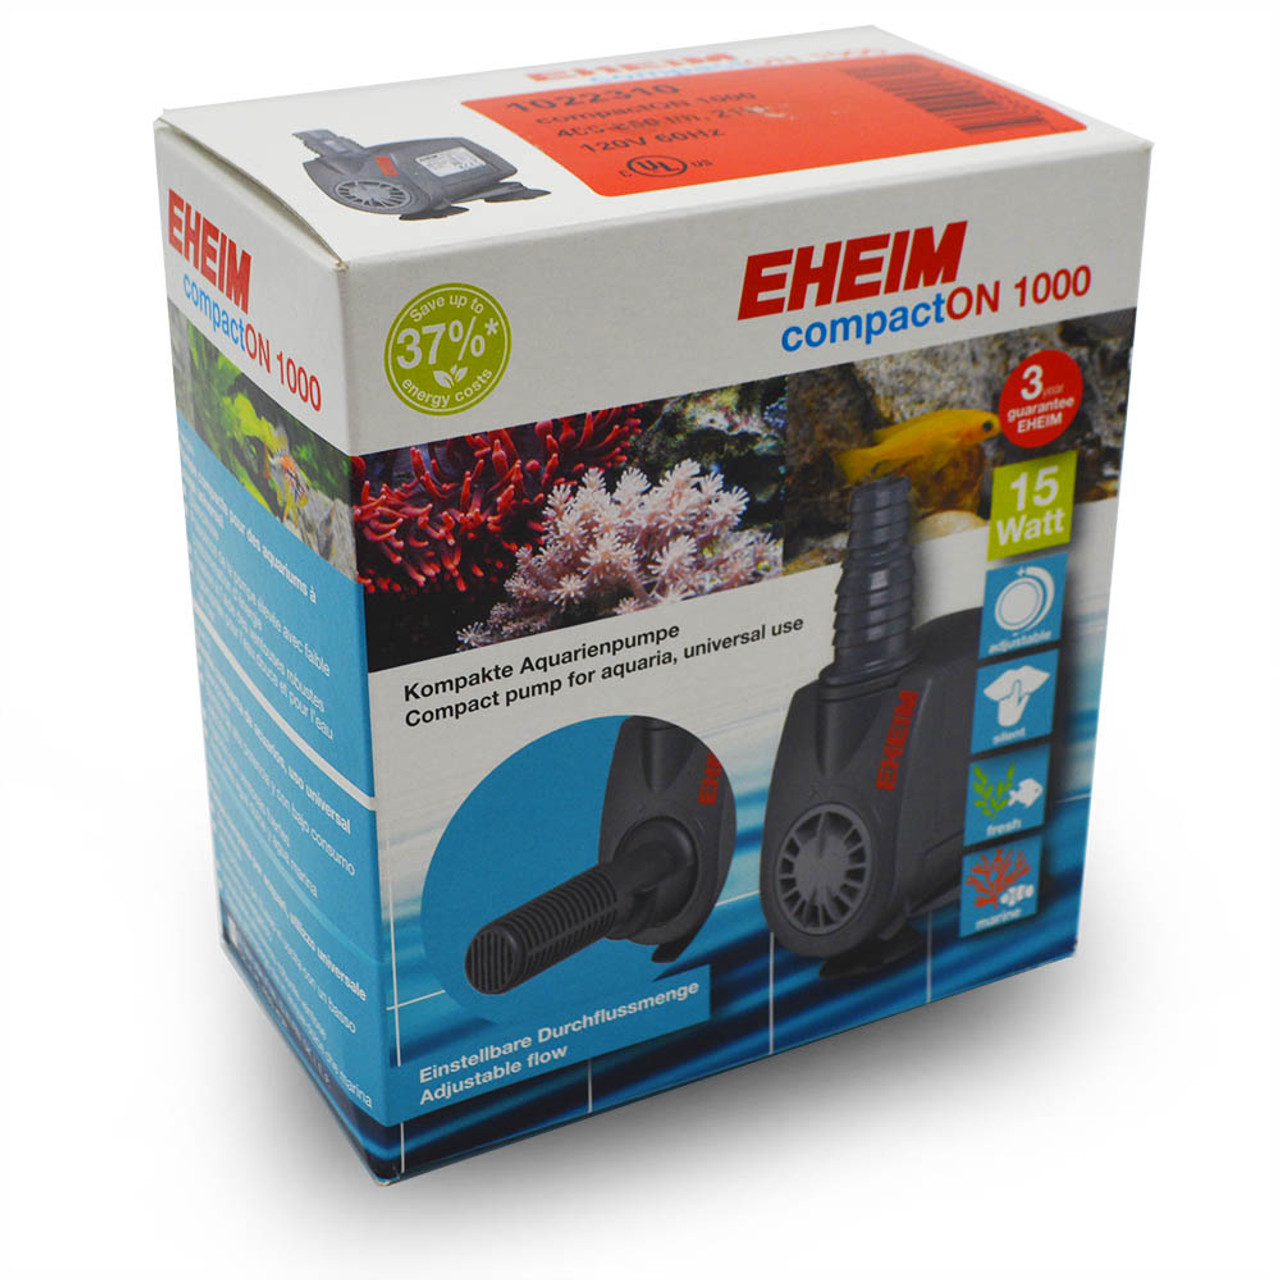 EHEIM compactON 1000 (264 GPH) Aquarium Pump - EHEIM